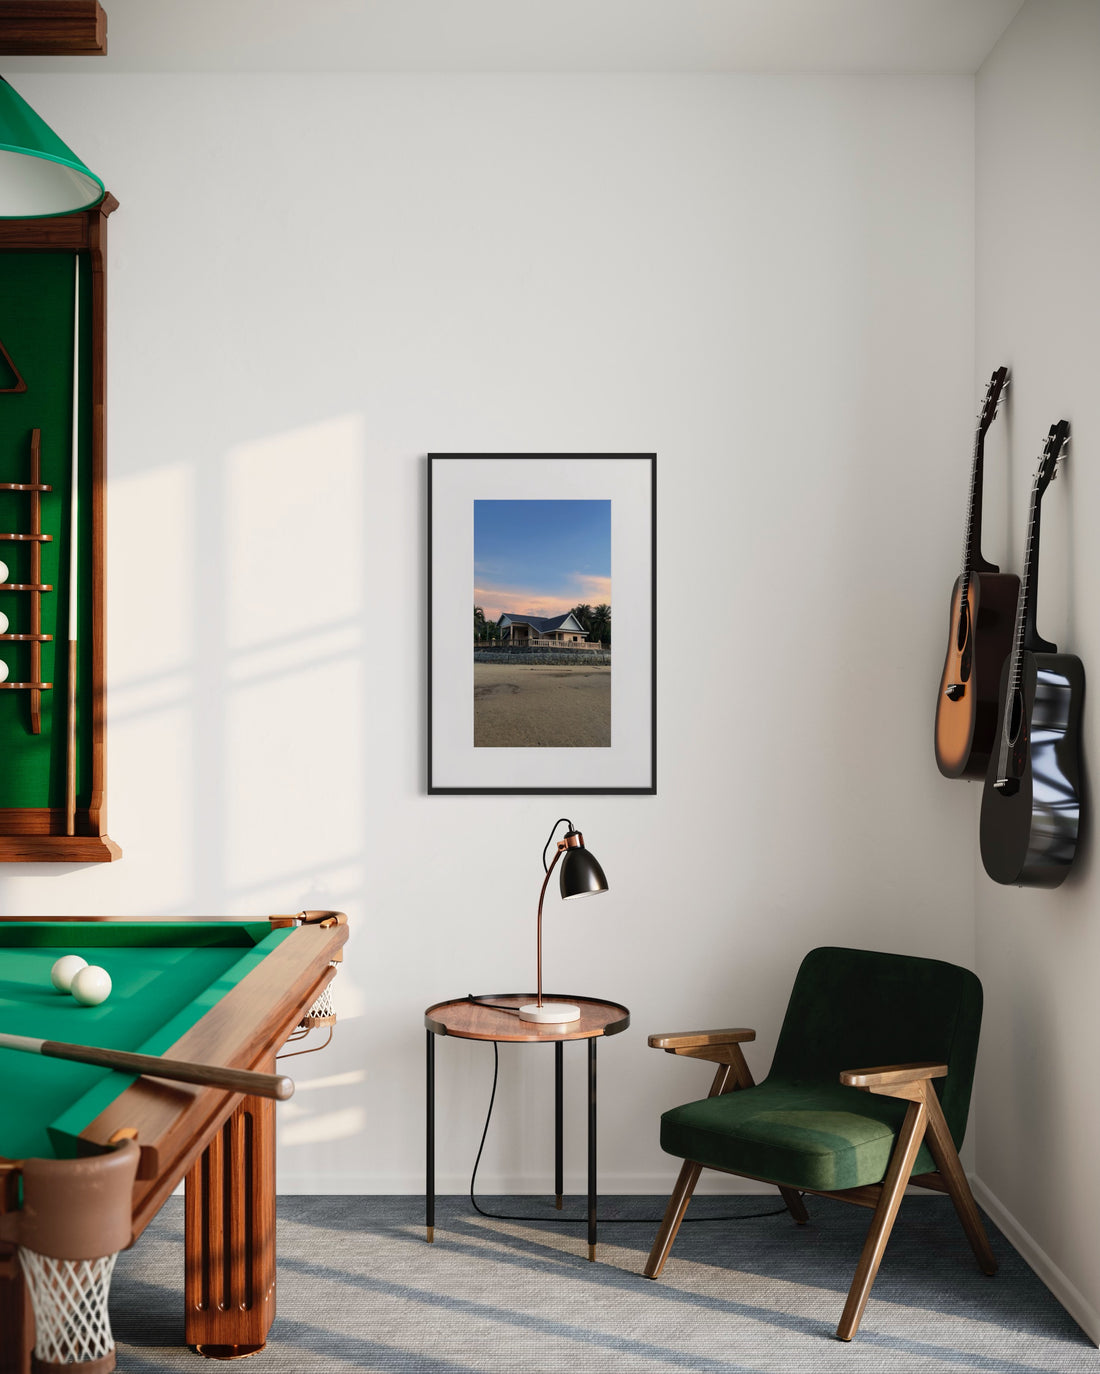 Stilvolles Wohnzimmer mit grünem Samtsessel, runder Holzbeistelltisch mit Lampe, Wand mit montierter Gitarre neben Billardtisch und Regal für Queue-Sticks, über dem ein gerahmtes Bild von einem Haus bei Sonnenuntergang hängt.